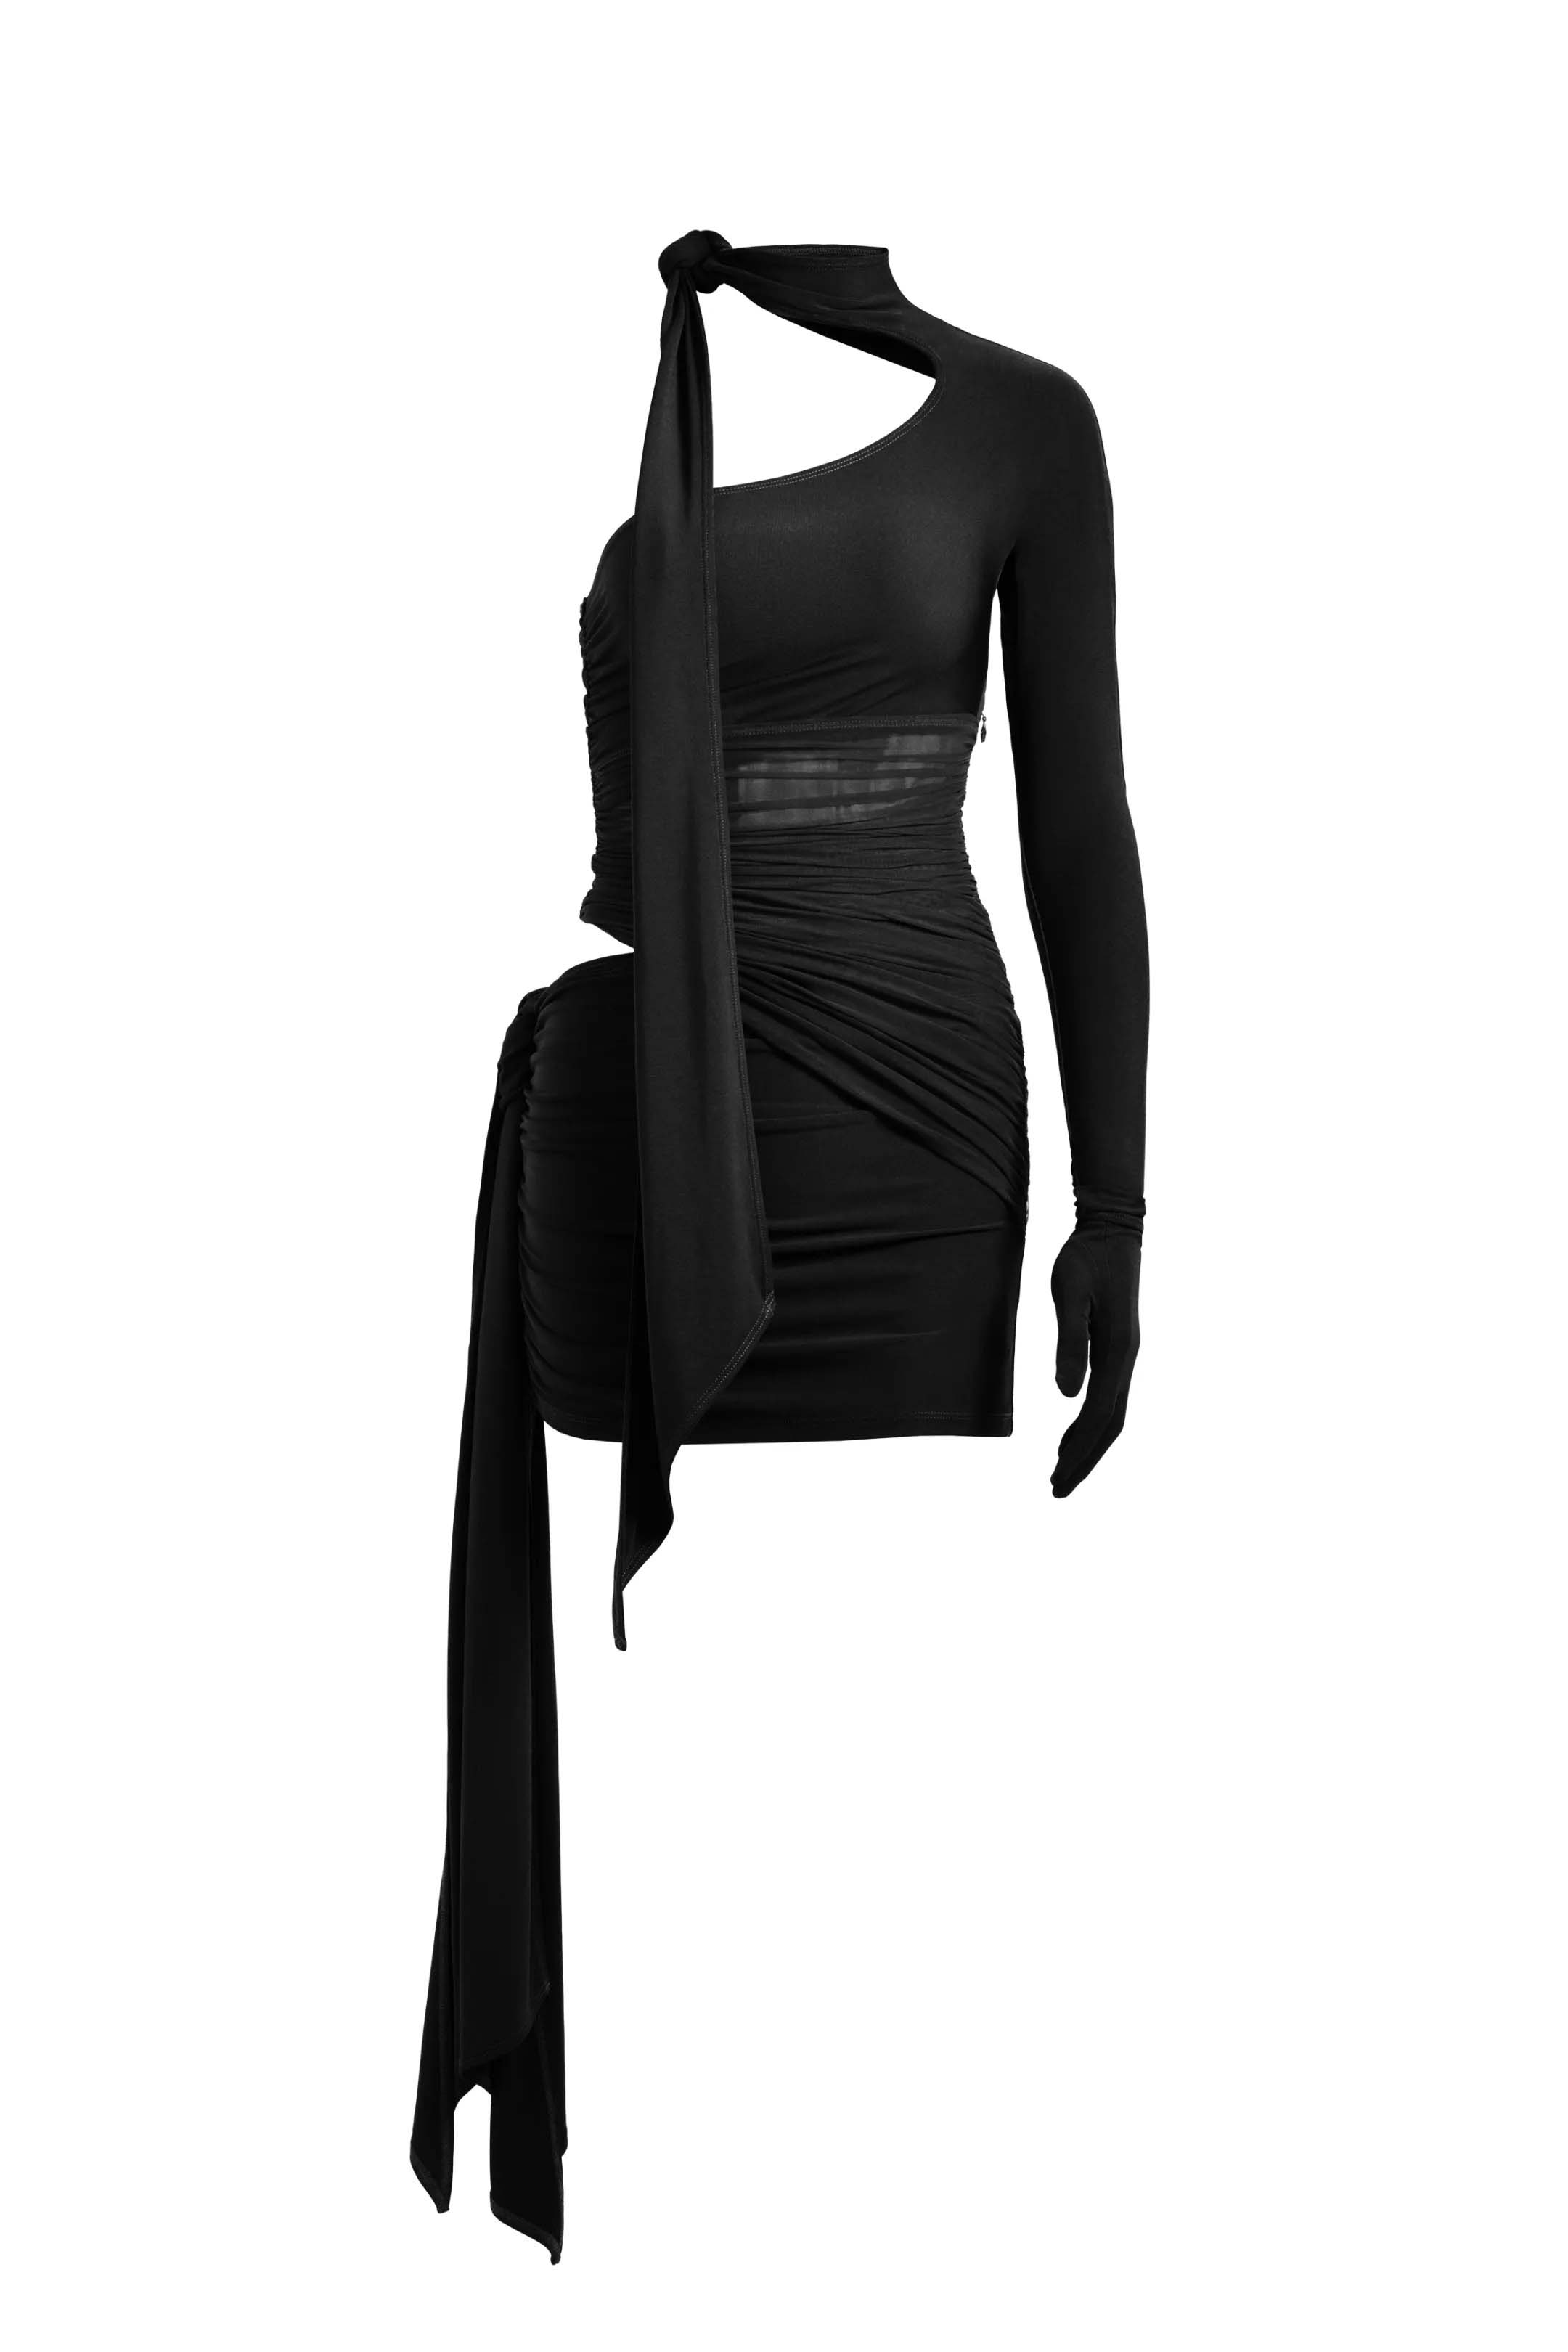 Mugler H&M Knot-Detail One-Shoulder Dress Black - SS23 - US